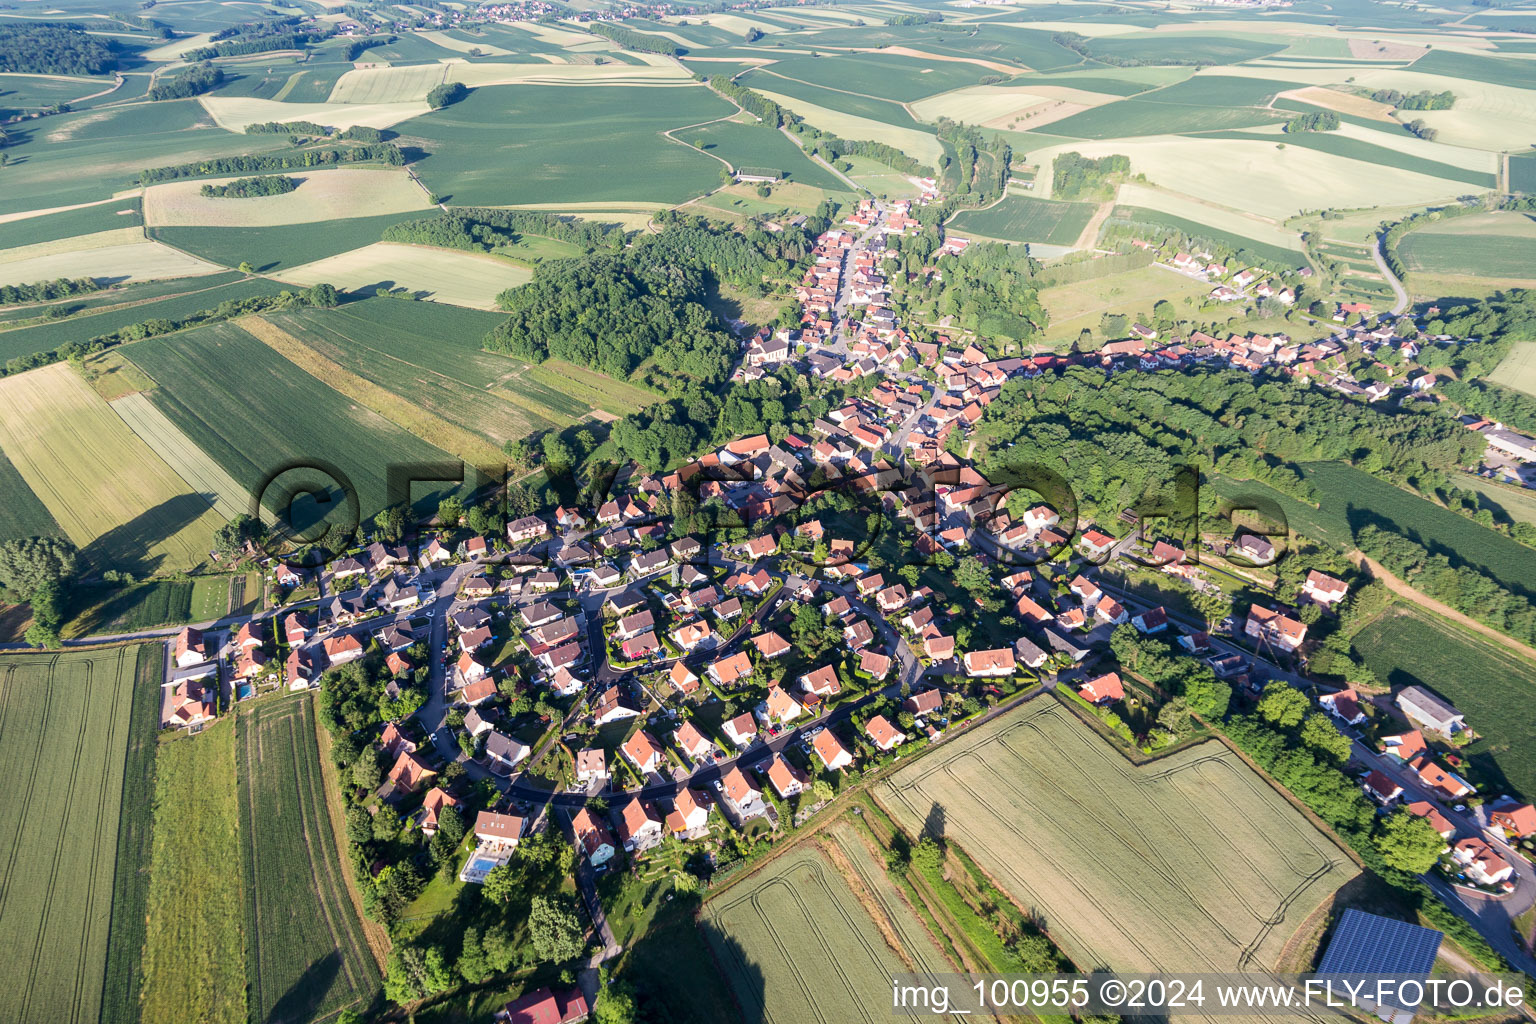 Luftbild von Dorf - Ansicht am Rande von landwirtschaftlichen Feldern und Nutzflächen in Néewiller-prés-Lauterbourg in Grand Est in Neewiller-près-Lauterbourg im Bundesland Bas-Rhin, Frankreich